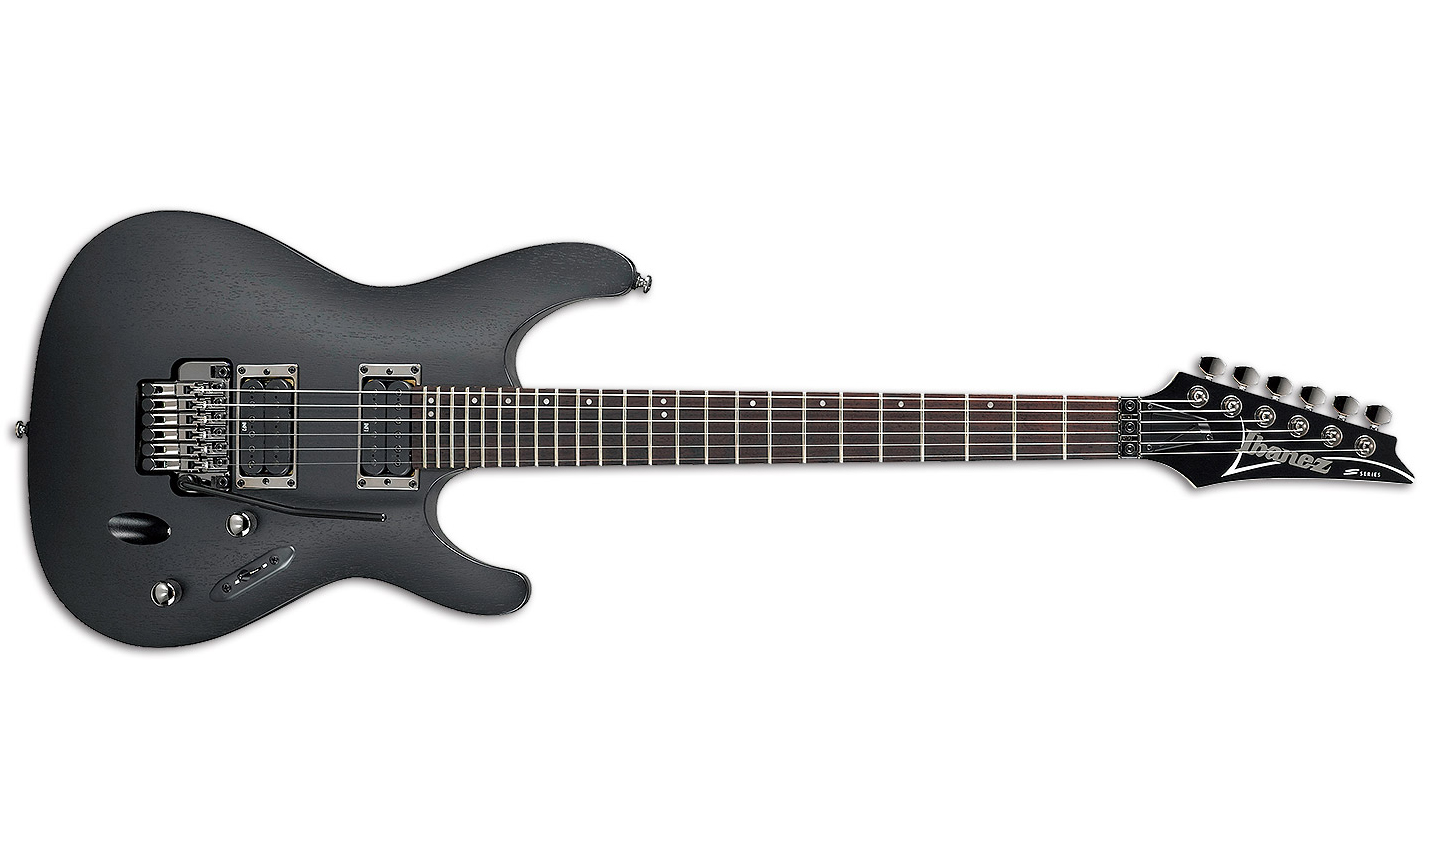 Ibanez S520 Wk Standard Hh Fr Jat - Weathered Black - Str shape electric guitar - Variation 1